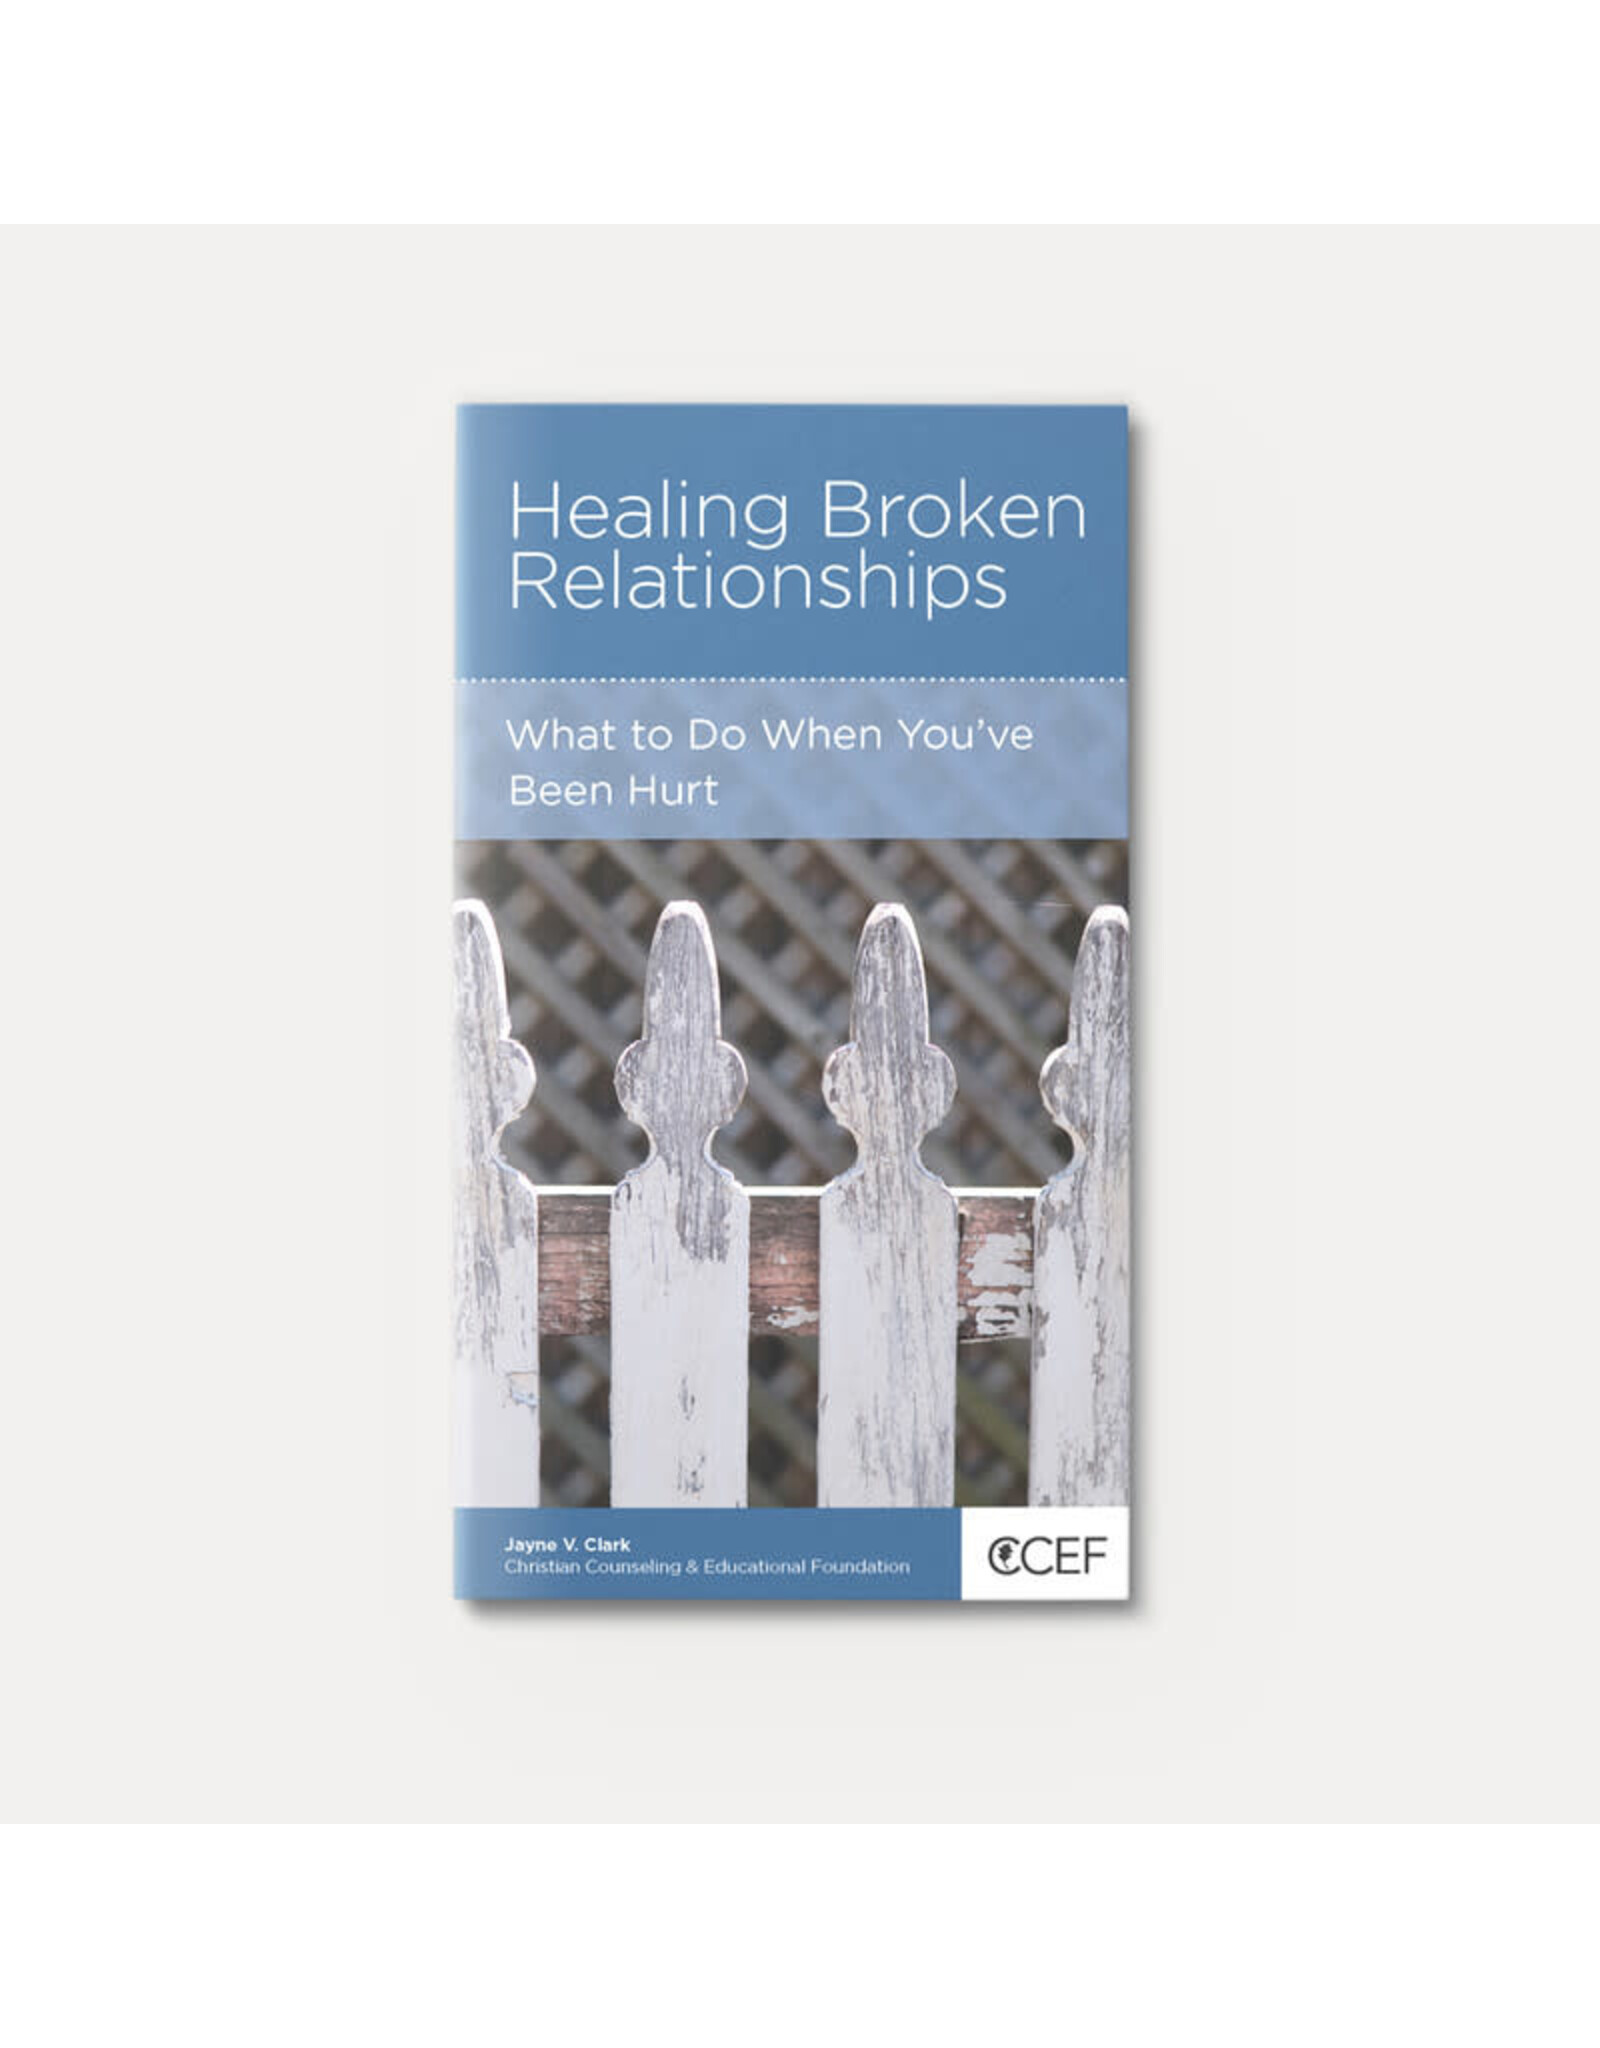 Jayne V. Clark Healing Broken Relationships: What To Do When You've Been Hurt